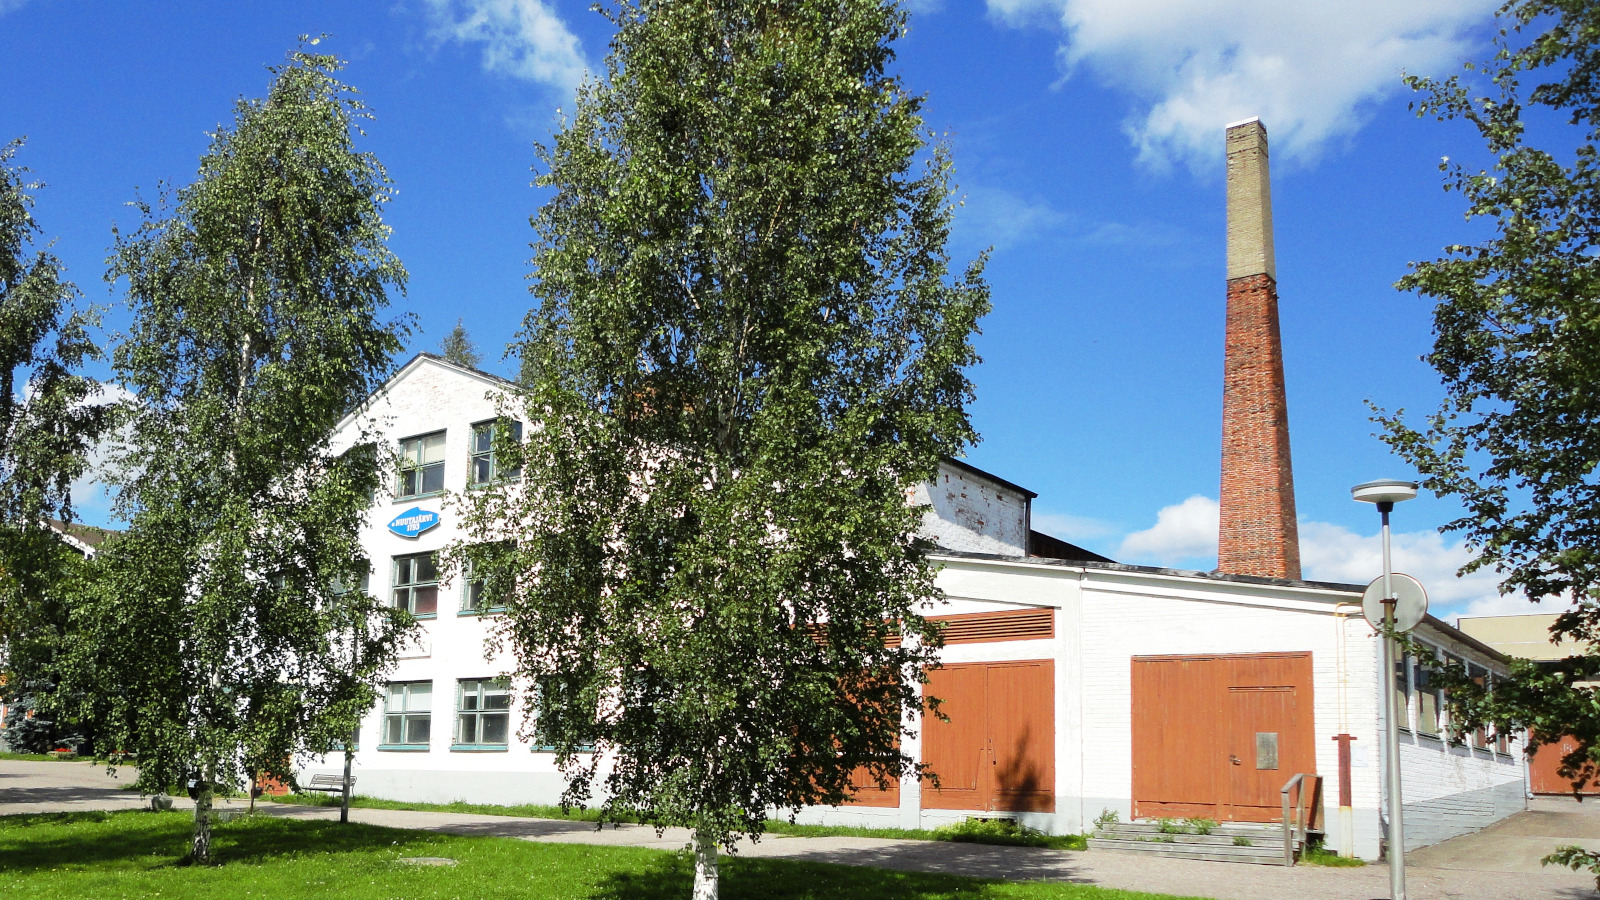 Nuutajärven lasitehdas on perustettu vuonna 1793 ja se toimi vuoteen 2014, jolloin sen tuotanto siirrettiin Fiskarsiin.